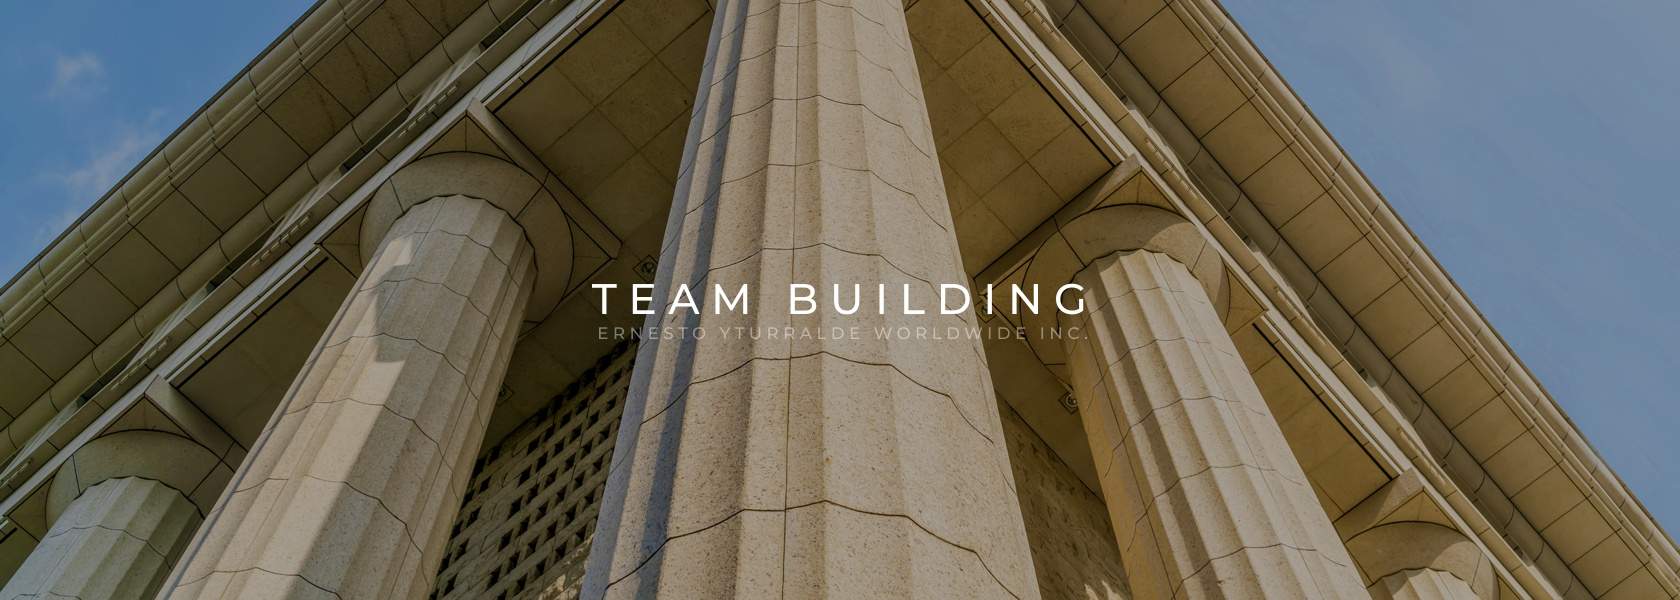 Uruguay Team Building Corporativo Vivencial Online para el desarrollo de equipos de trabajo